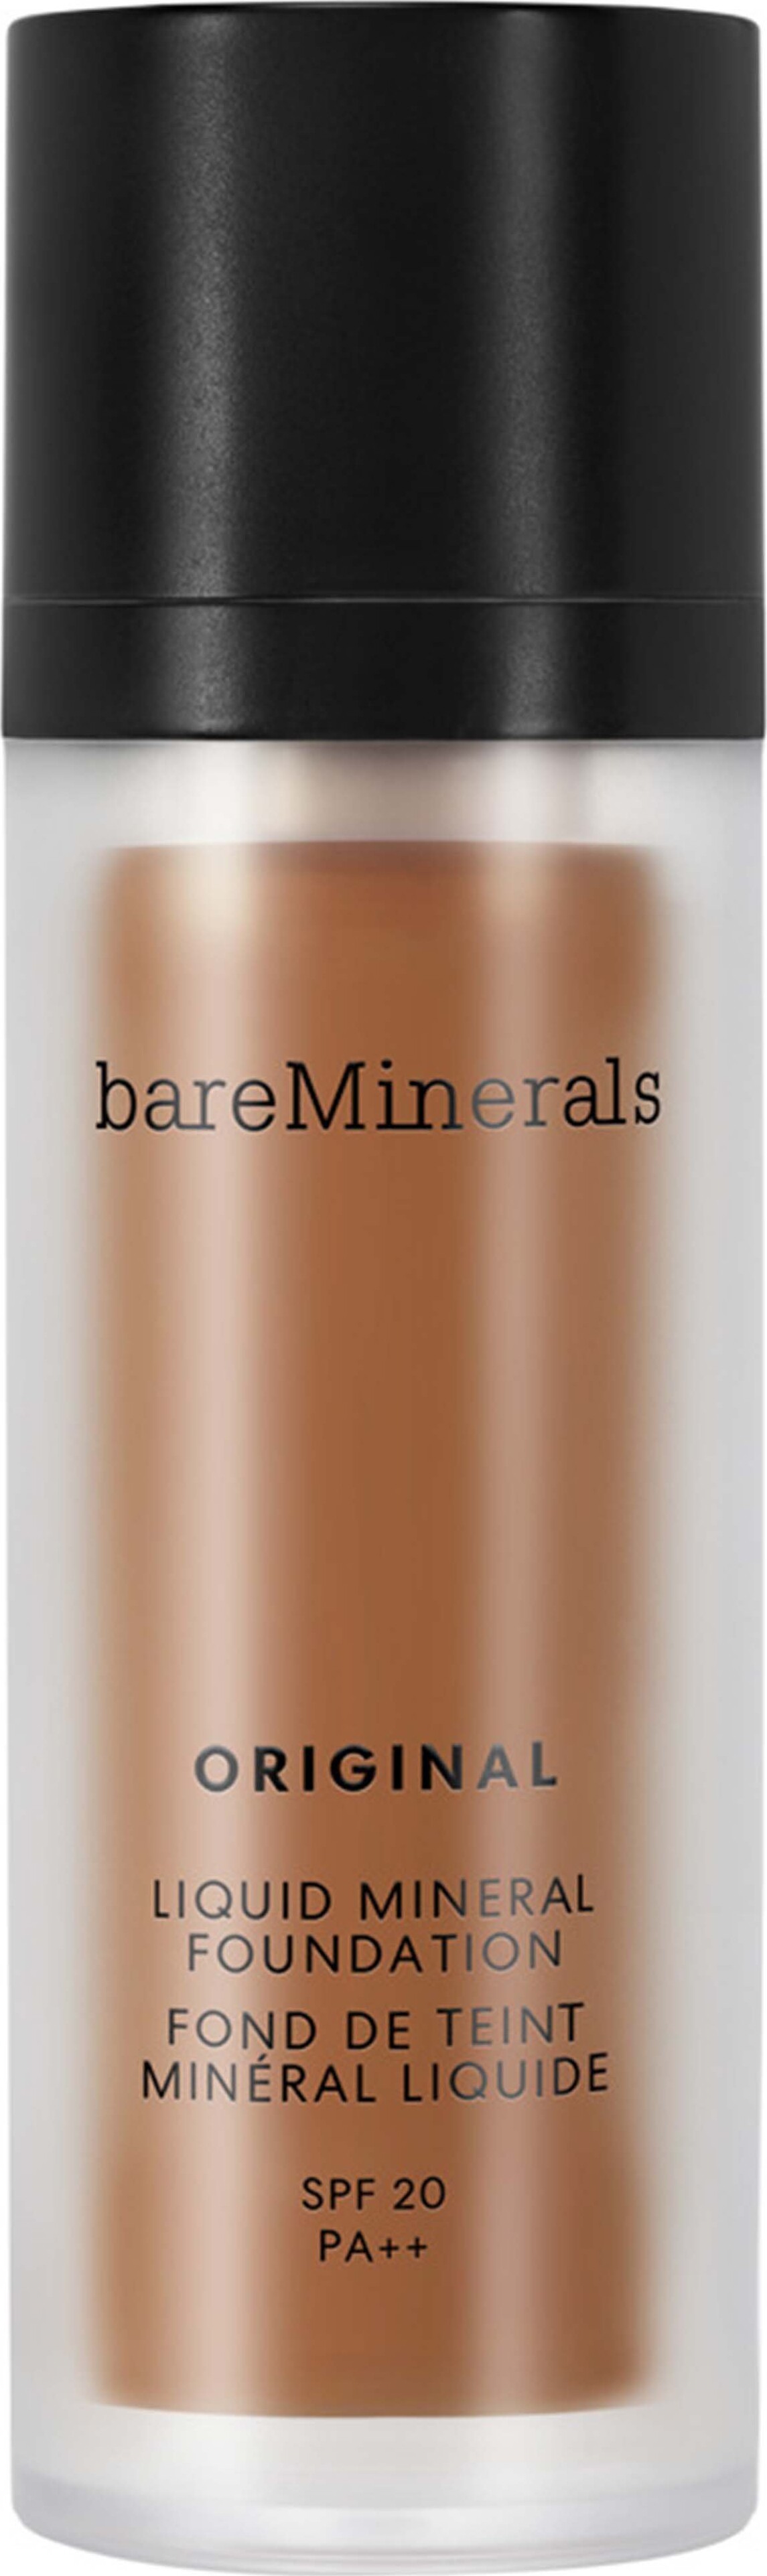 Bareminerals - Original Liquid Mineral Foundation - Golden Dark 25